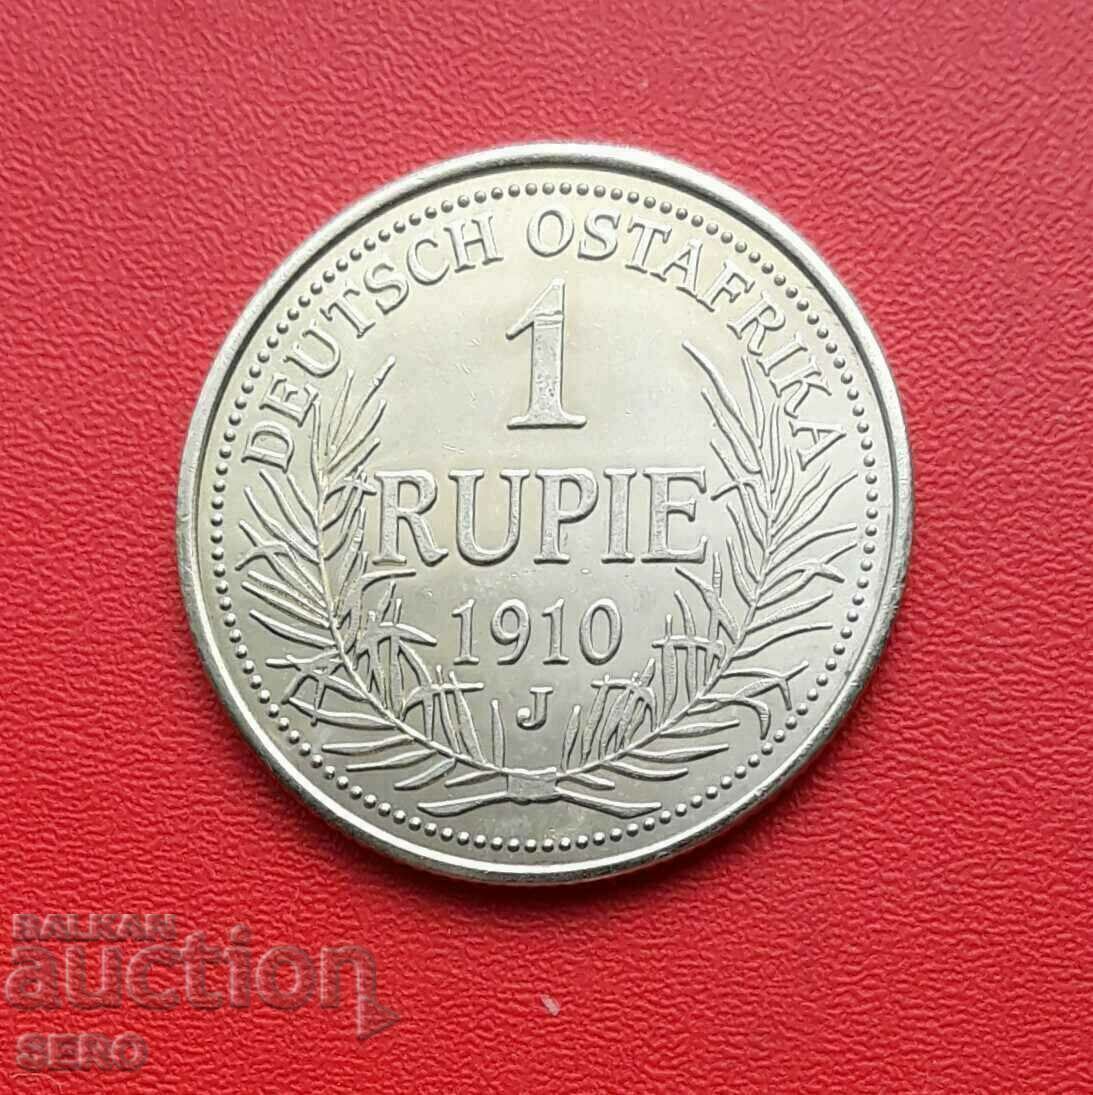 Germania - Copie a 1 rupie 1910 a ex. Africa 2004